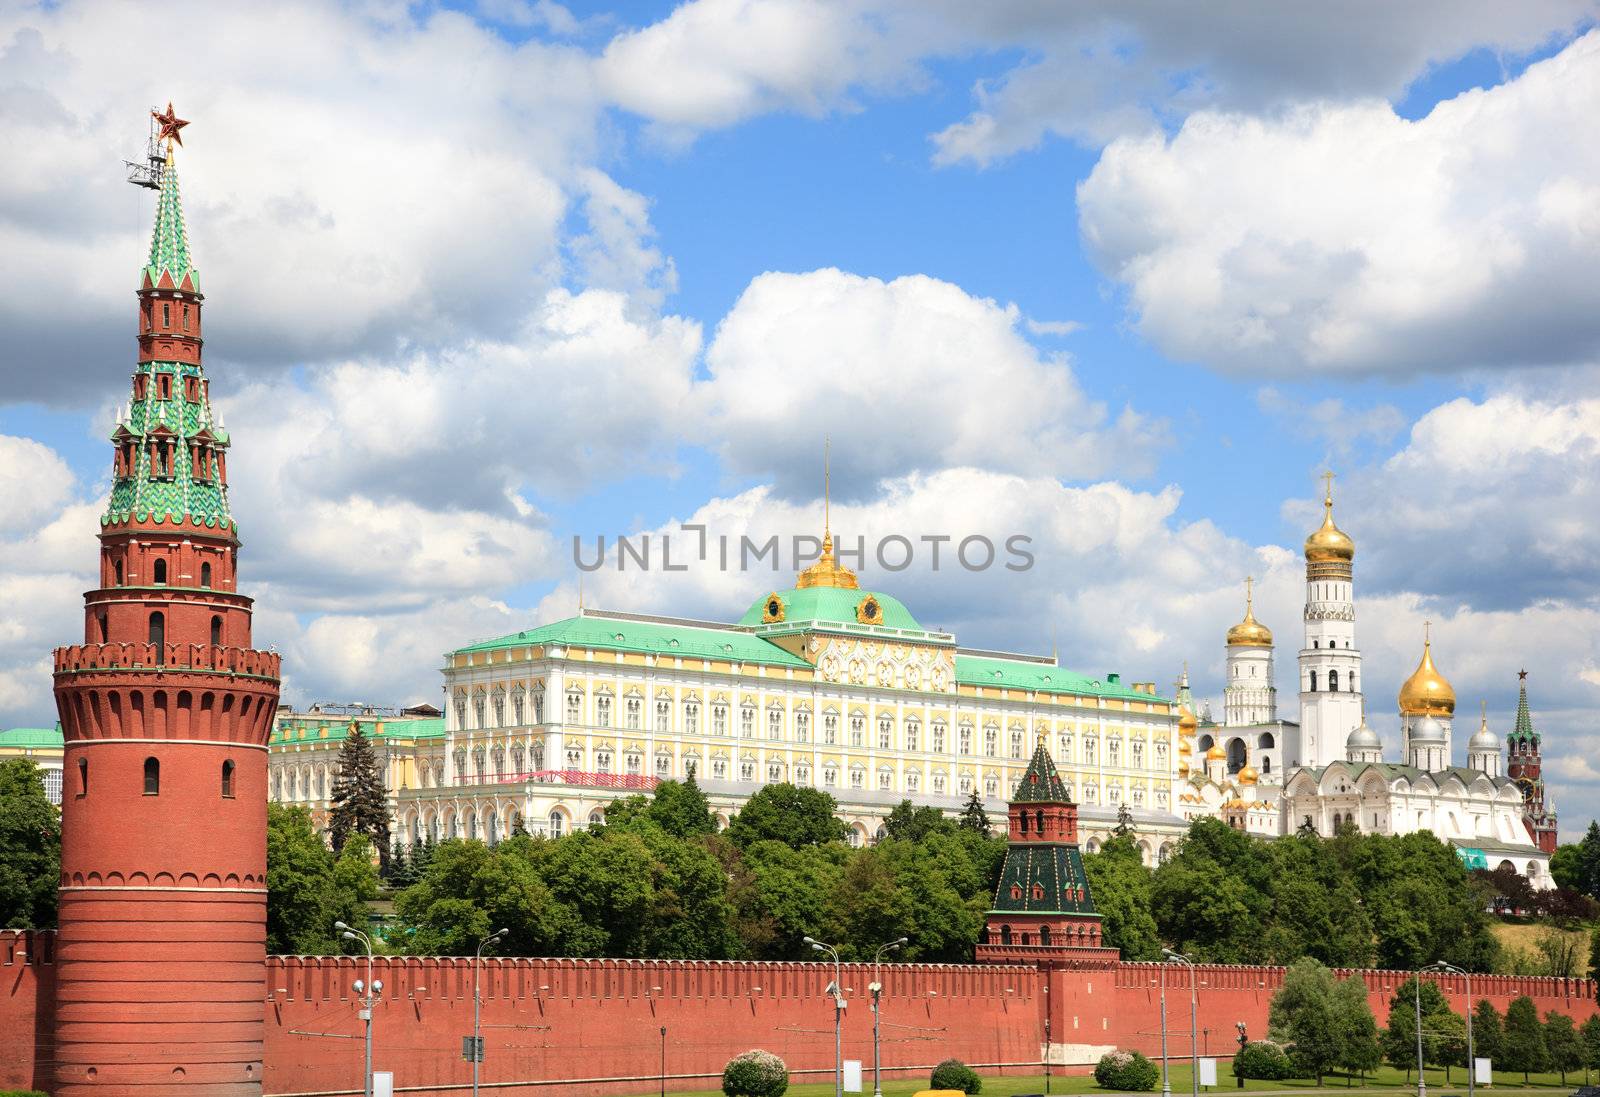 Moscow Kremlin by Kuzma